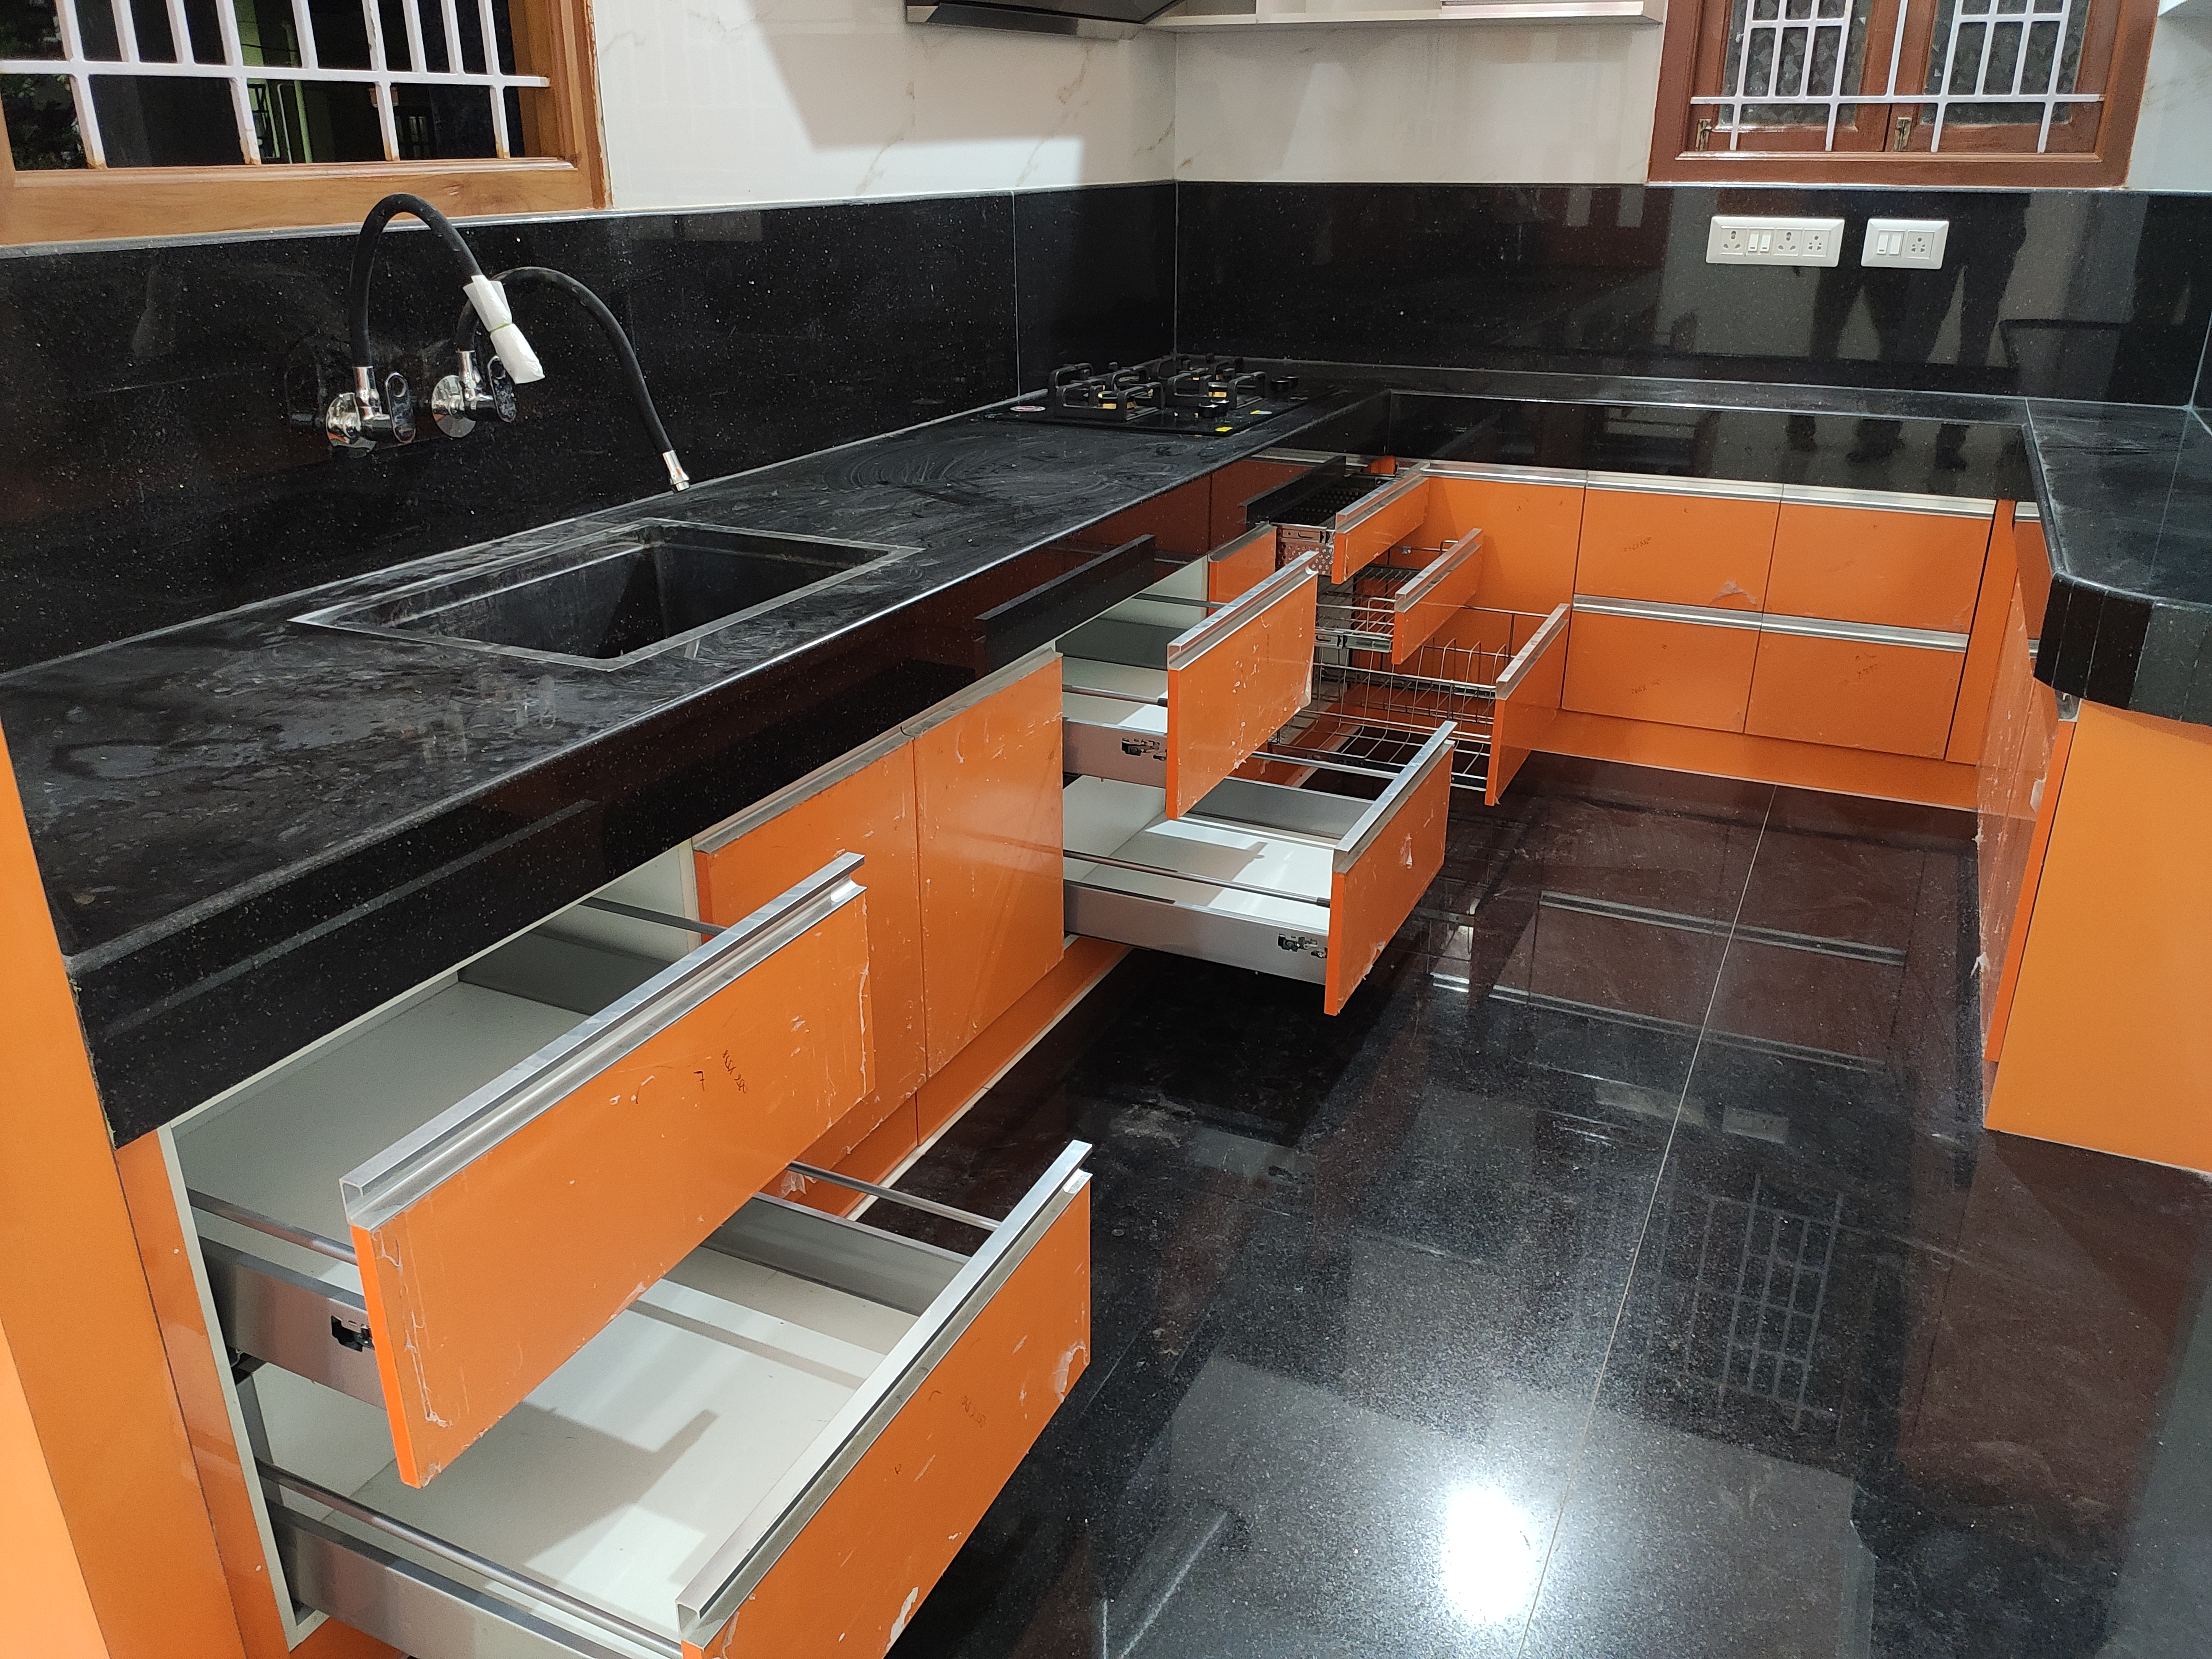 Kitchen layout ideas in Coimbatore